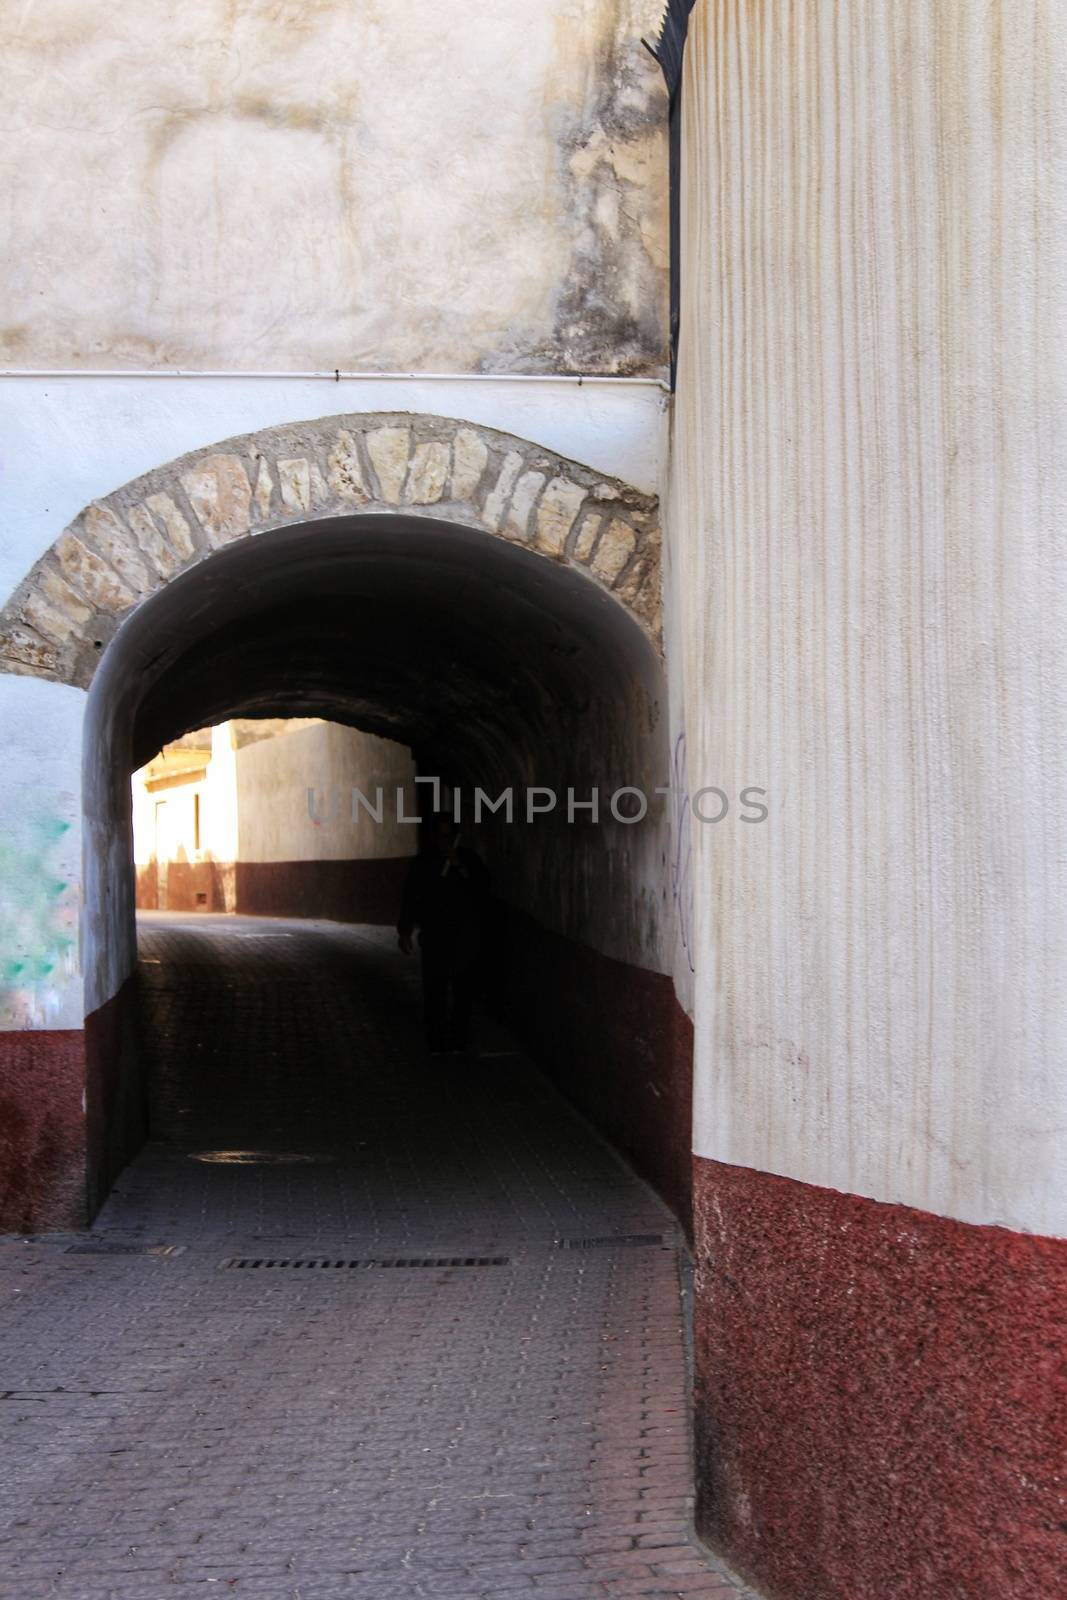 Narrow street with dark tunnel in Caravaca de la Cruz, Murcia, Spain